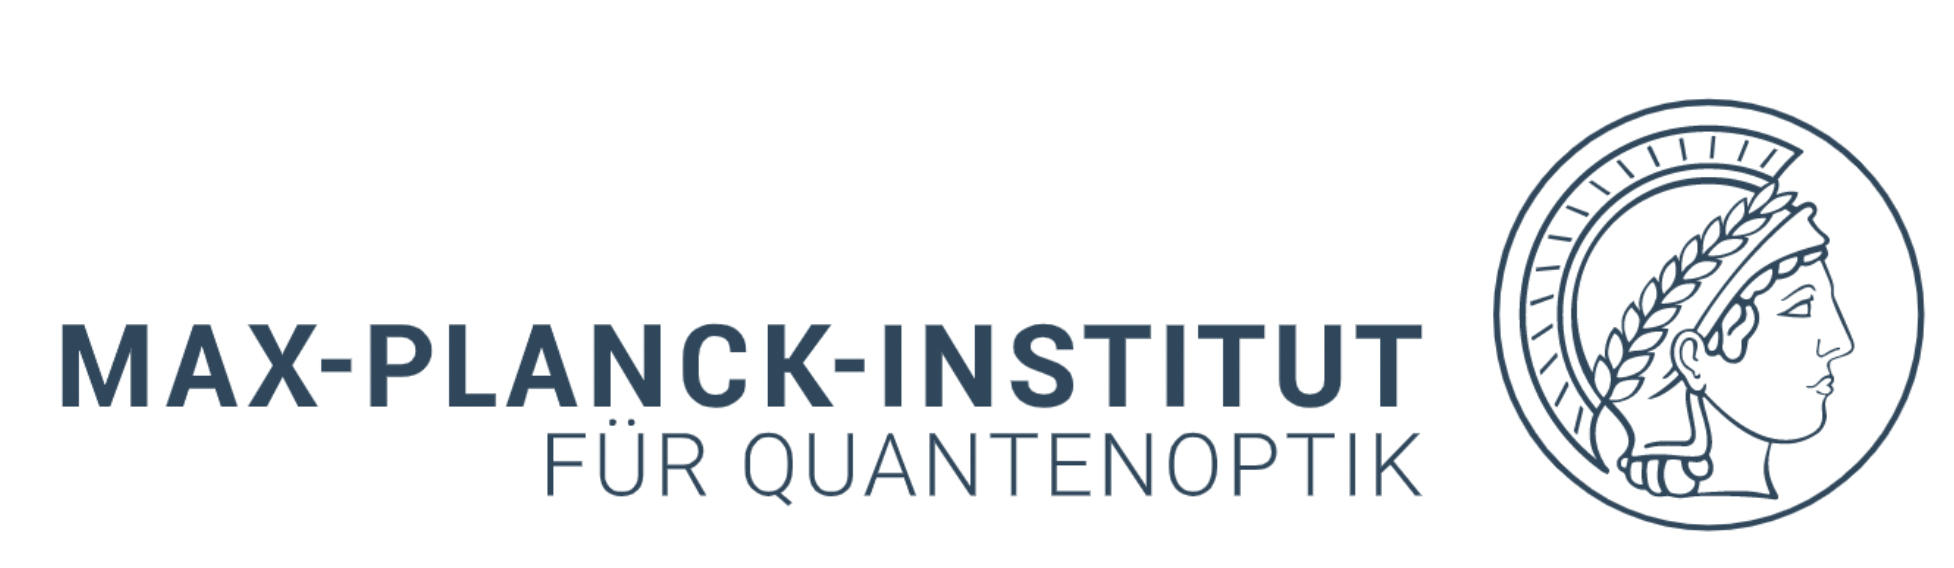 สรุปข่าวควอนตัม: 8 มีนาคม 2024: Classiq และ Alice & Bob ร่วมมือกันนำเสนอการประมวลผลควอนตัมแบบครบวงจรตั้งแต่การพัฒนาระดับสูงไปจนถึงโปรแกรมจำลอง Qubit แบบลอจิคัล; QuantrolOx และ Zurich Instruments ผนึกกำลังเร่งความได้เปรียบด้านควอนตัม Zapata AI และ Andretti INDYCAR เตรียมพร้อมที่จะใช้ AI เชิงอุตสาหกรรมกับกลยุทธ์และการวิเคราะห์วันแข่งขันในปี 2024 Vescent ประกาศระดมทุน 5 ล้านเหรียญสหรัฐในการระดมทุน Series Seed นำโดย Corporate Fuel นักวิจัยจากสถาบัน Max Planck of Quantum Optics (MPQ) ประสบความสำเร็จในการพัฒนาเทคนิคใหม่ในการถอดรหัสคุณสมบัติของแสงและสสาร กระทรวงกลาโหมฝรั่งเศสมอบรางวัลสัญญา 5 ฉบับให้กับ Alice & Bob, C12, Pasqal, Quandela และ Quobly มูลค่าสูงถึง 500 ล้านยูโร (545 ล้านดอลลาร์สหรัฐ) เพื่อพัฒนาคอมพิวเตอร์ควอนตัม - ภายในเทคโนโลยีควอนตัม PlatoBlockchain Data Intelligence ค้นหาแนวตั้ง AI.